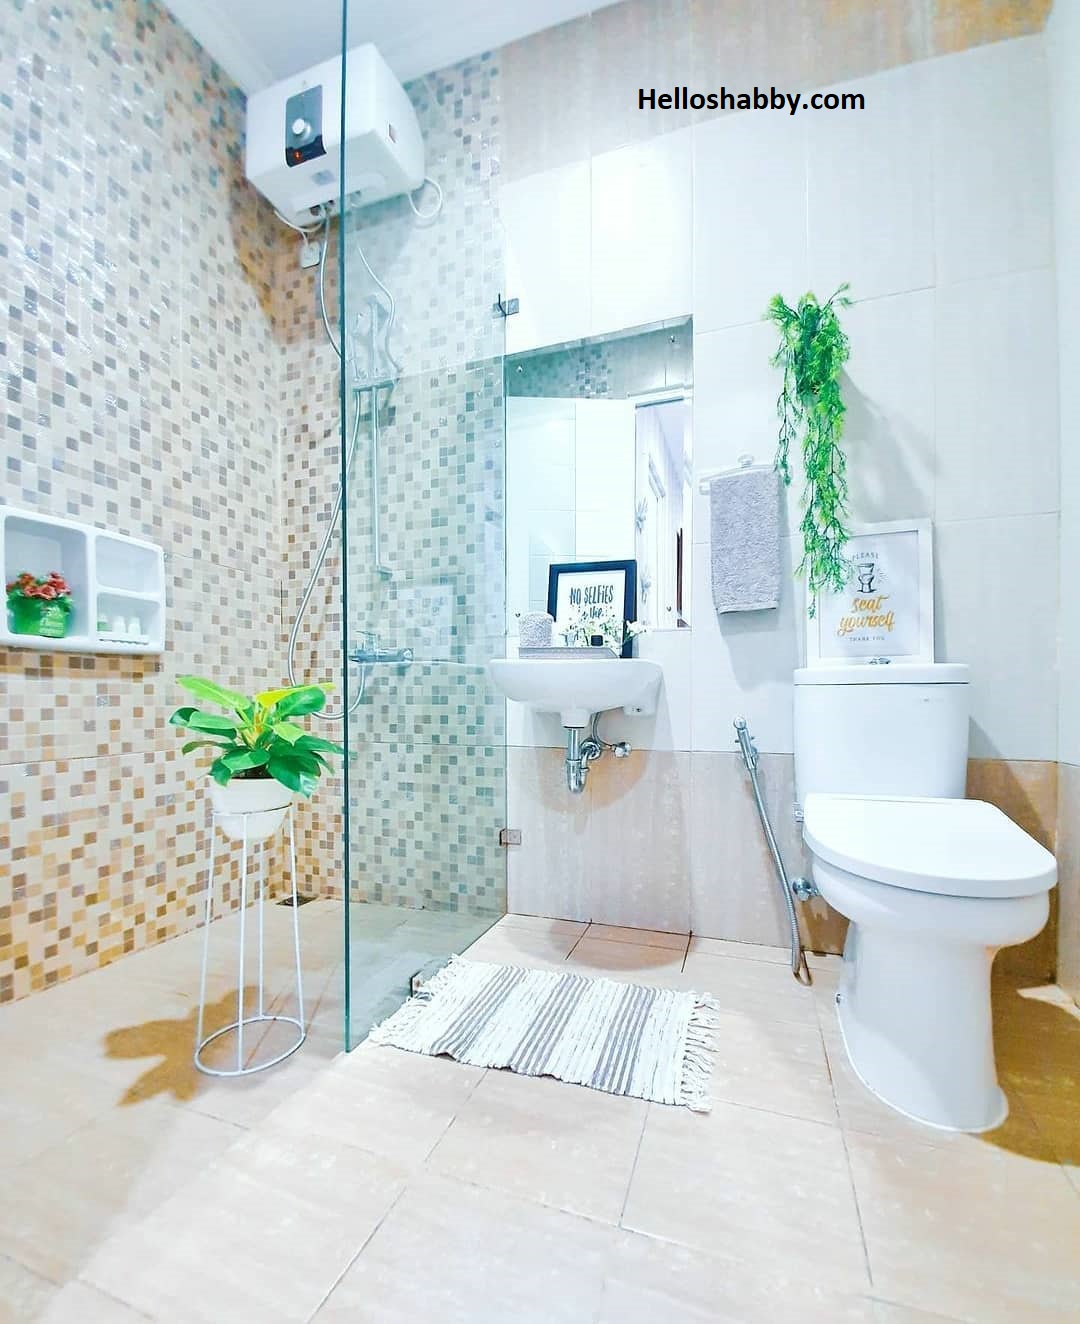 6 Desain Kamar Mandi Dengan Pembatas Kaca Dibagian Shower Area Helloshabby Com Interior And Exterior Solutions